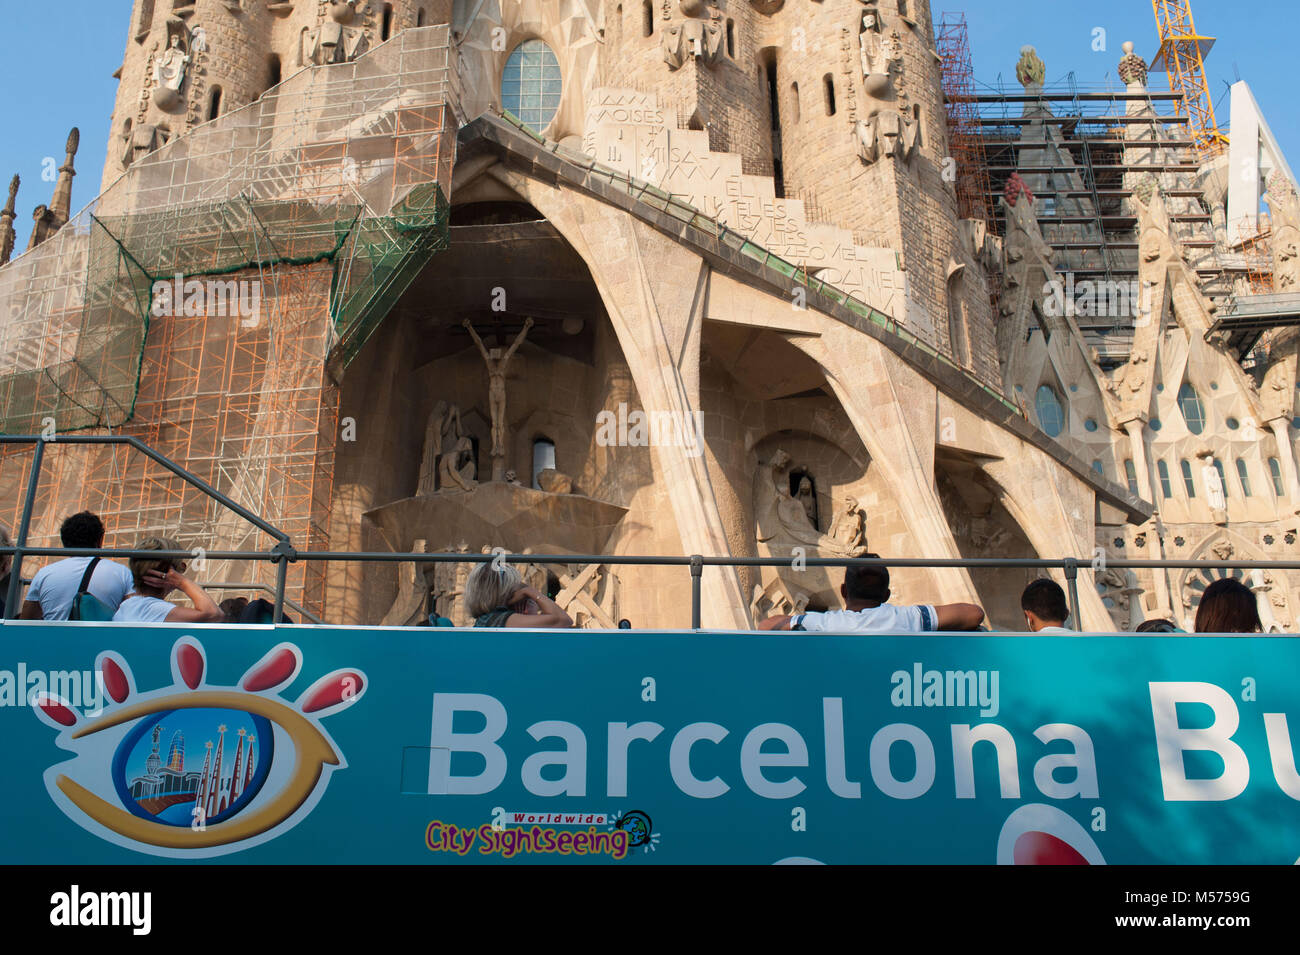 Barcelona, Katalonien. Spanien. Sagrada Familia von Antoni Gaudì. Stockfoto